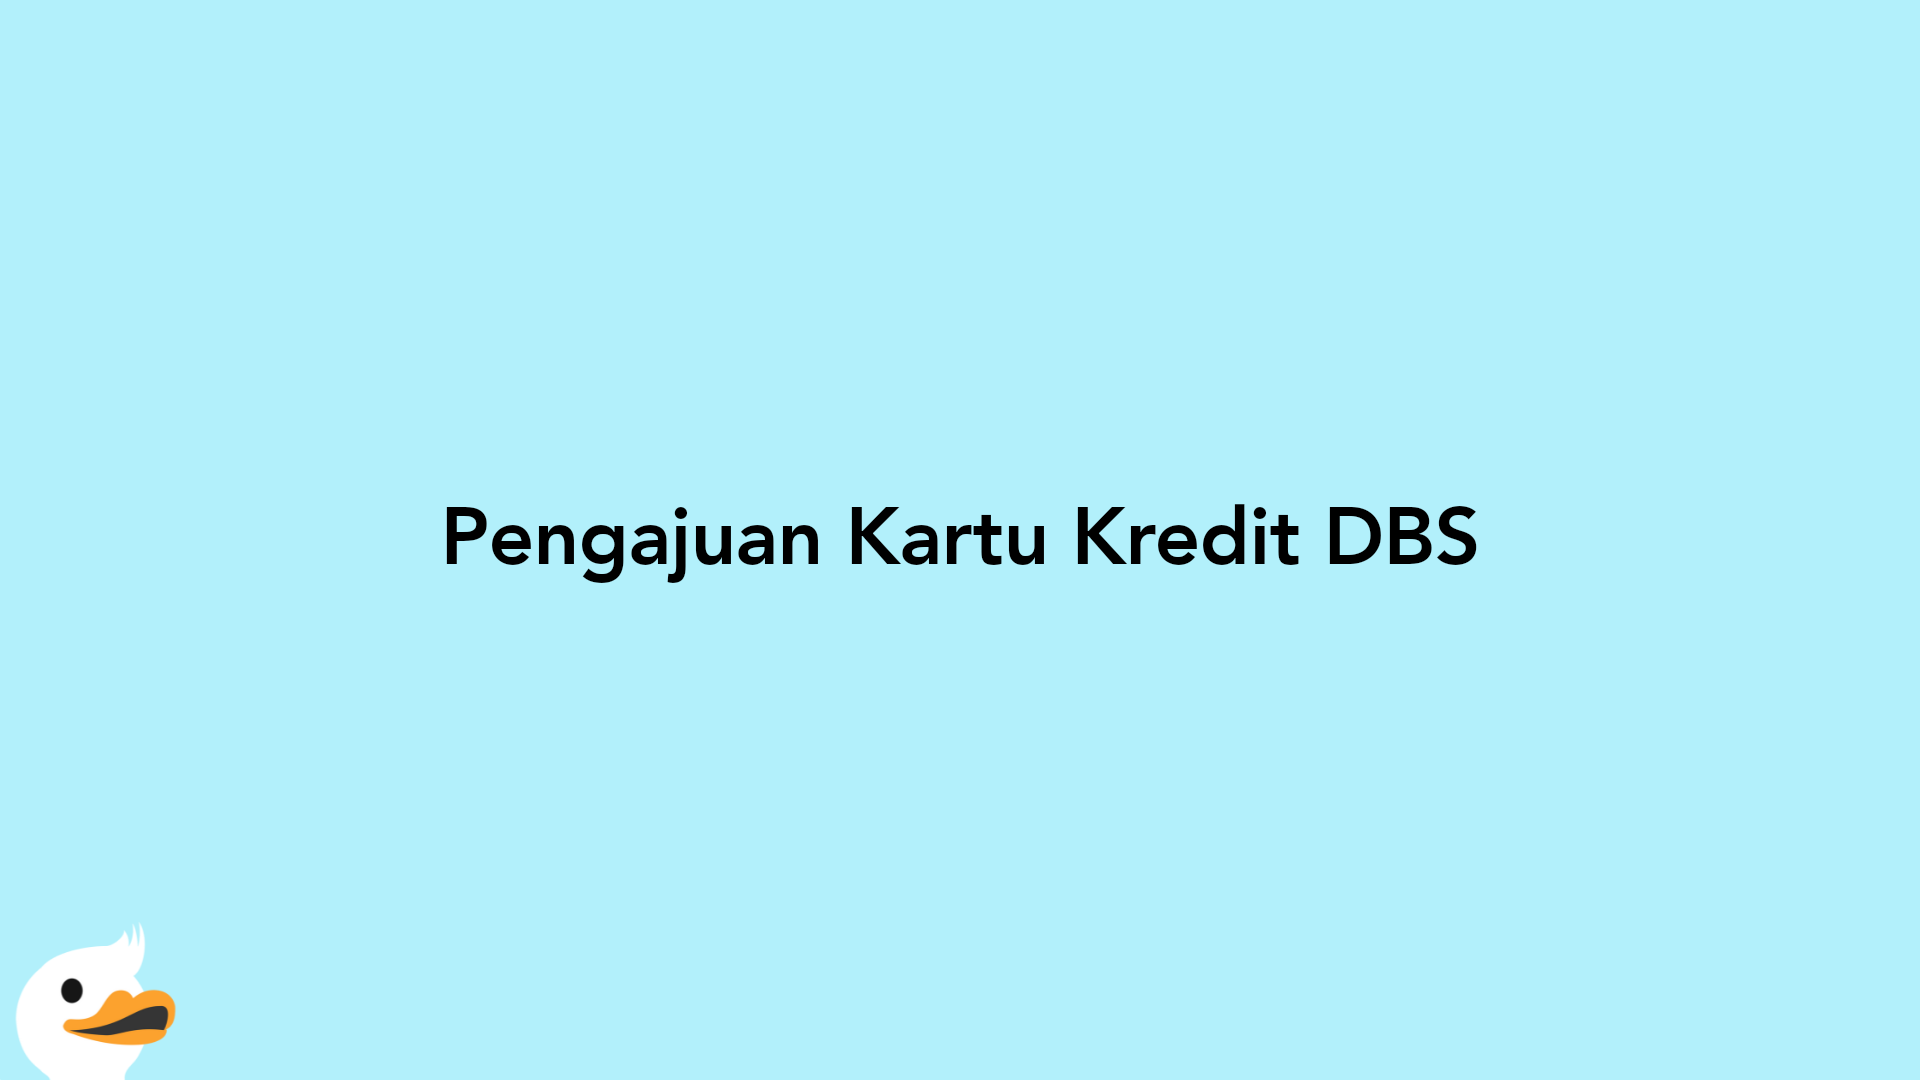 Pengajuan Kartu Kredit DBS